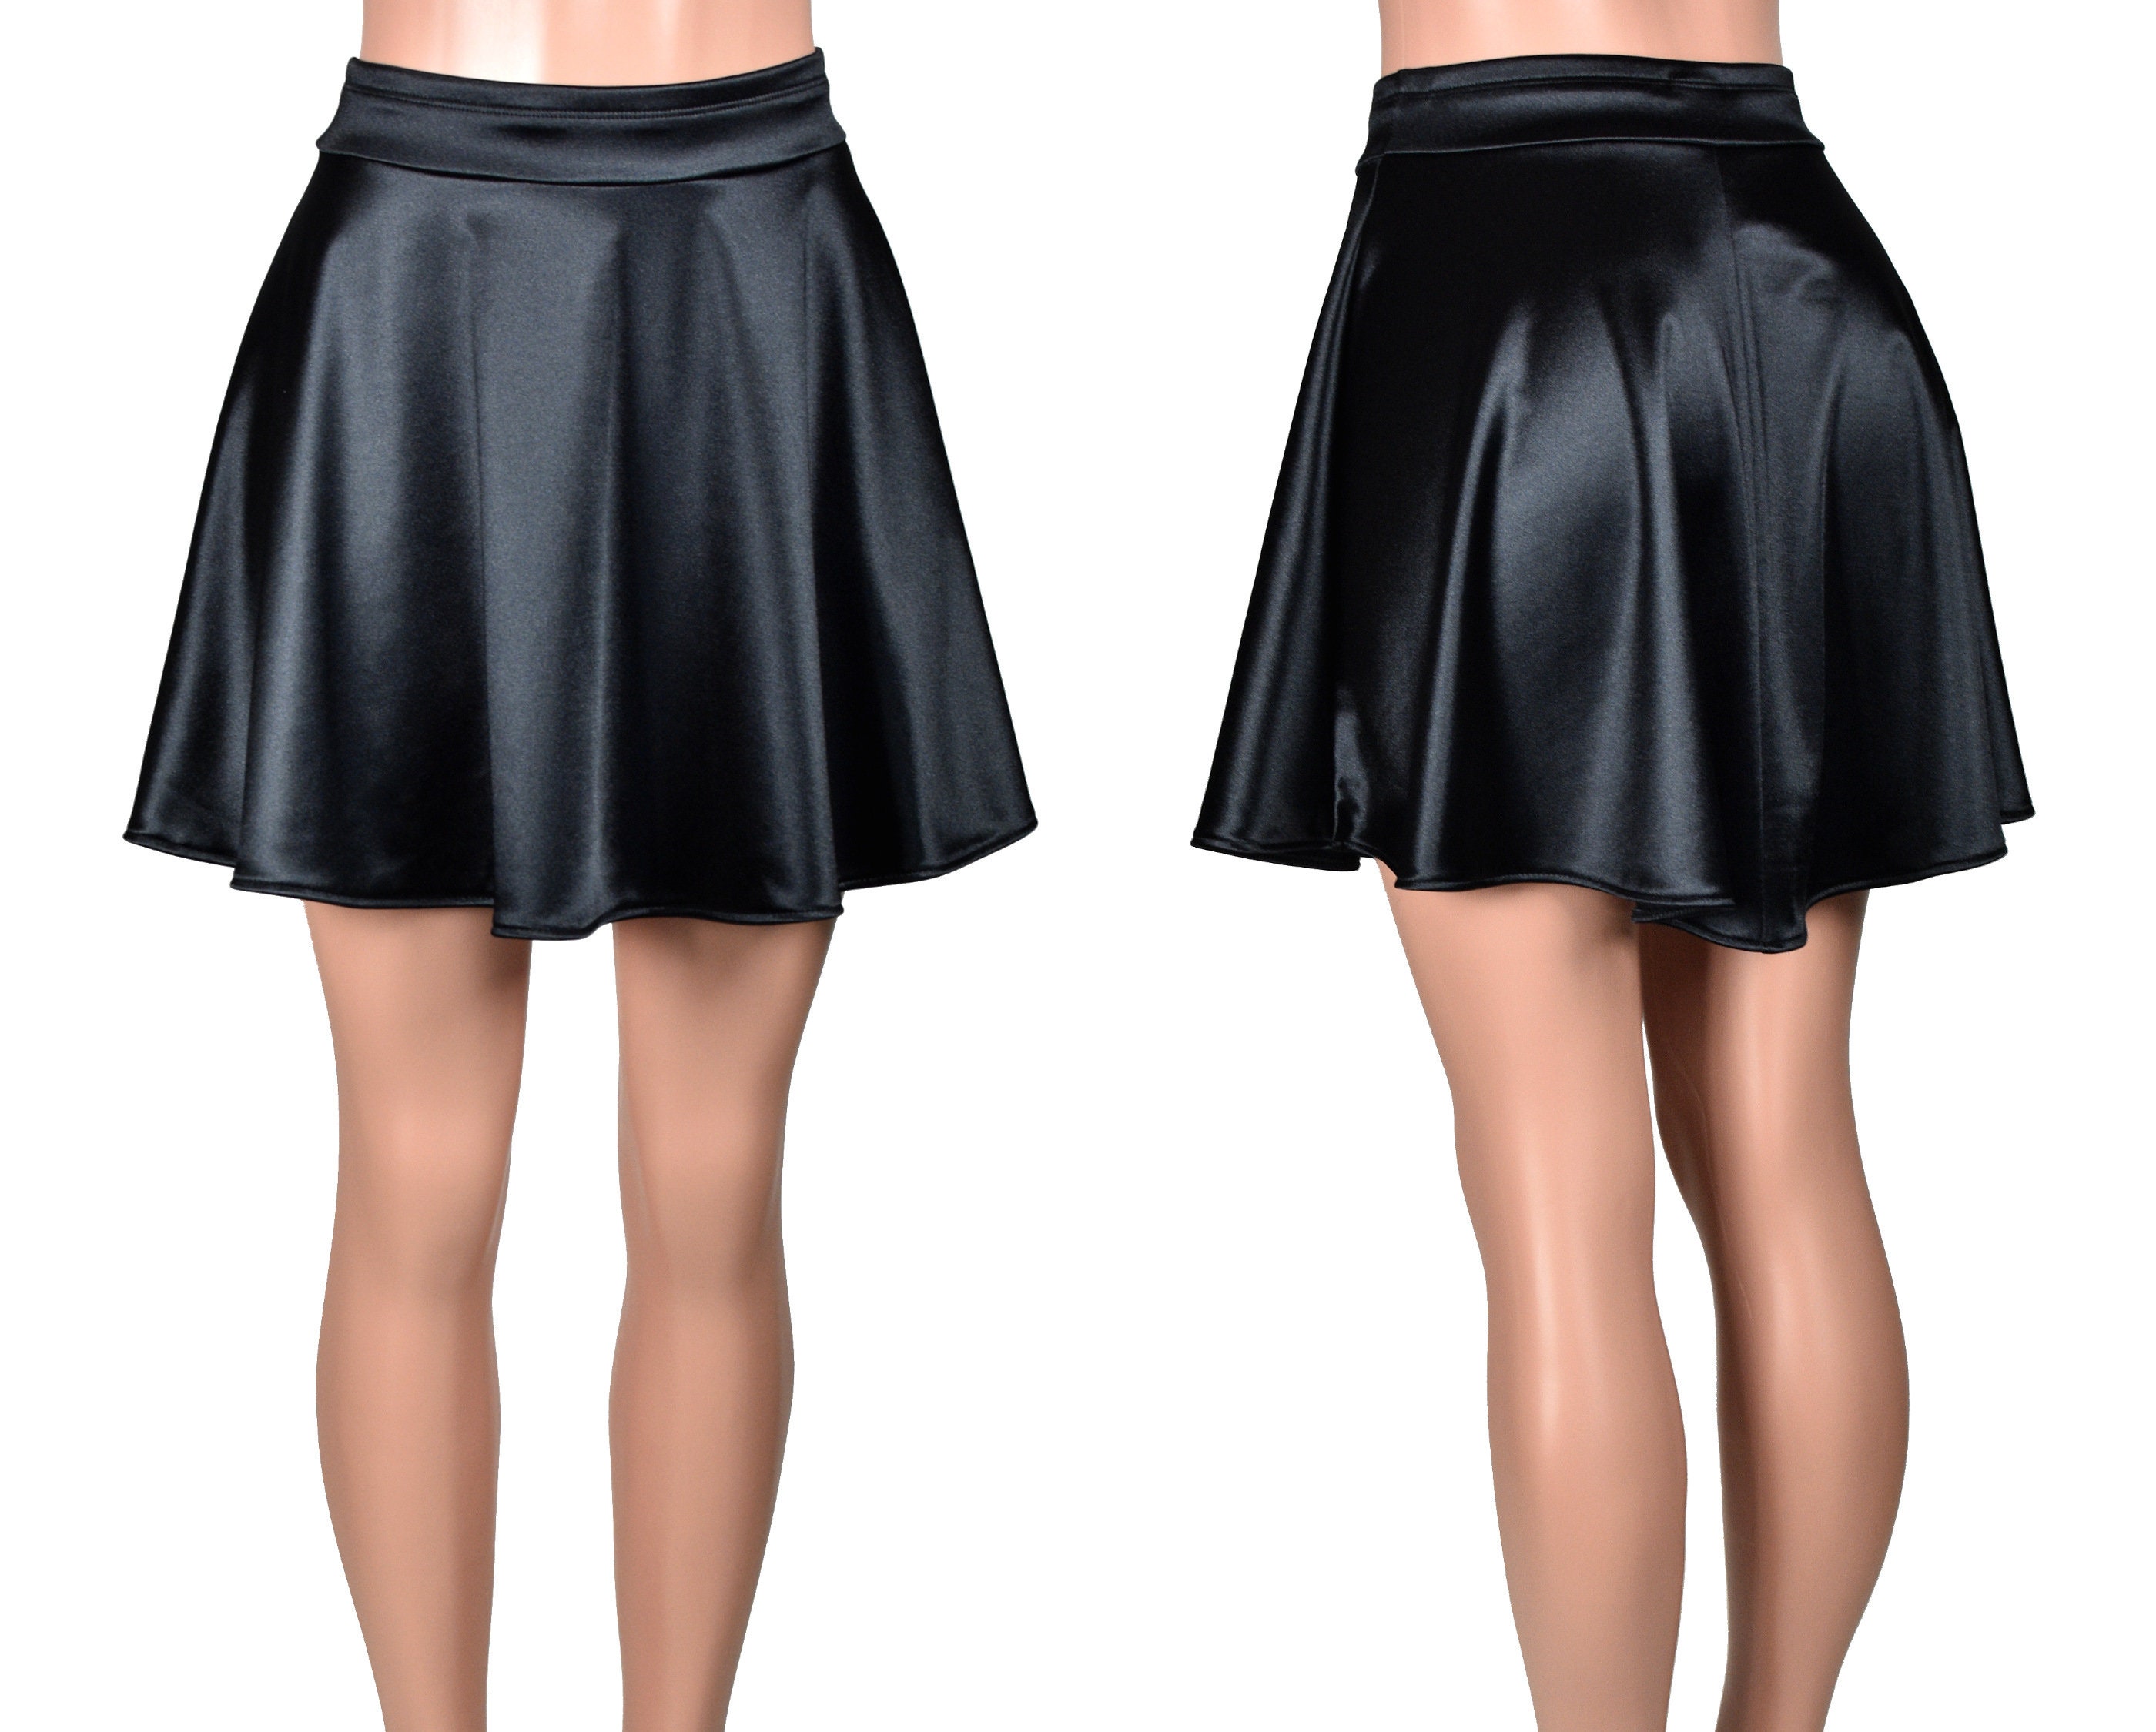 Black Stretch Satin Skater Skirt mini Length Plus Size XS S M L XL 2XL 3X  4X High-waisted Fit and Flare Swing Skirt Retro Vintage-inspired 